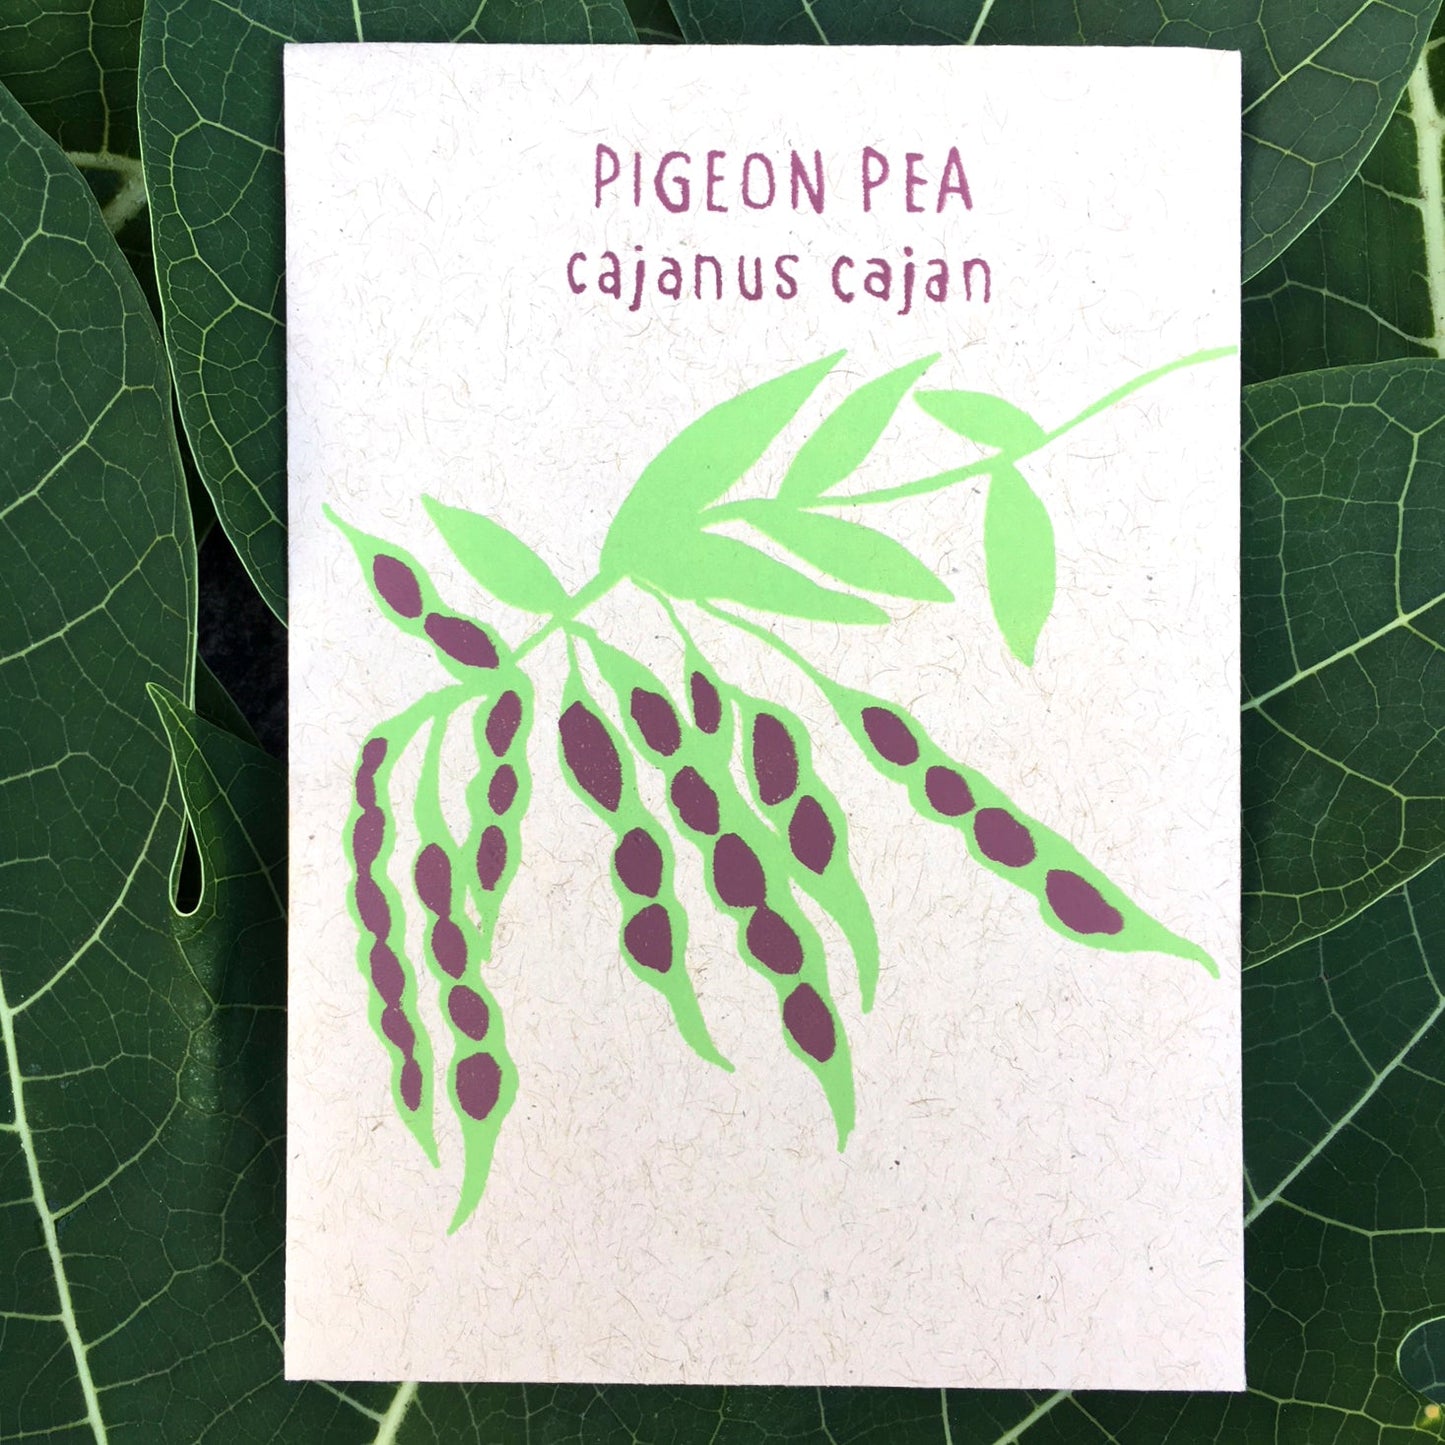 Pigeon Pea (cajanus cajan) 30 seeds